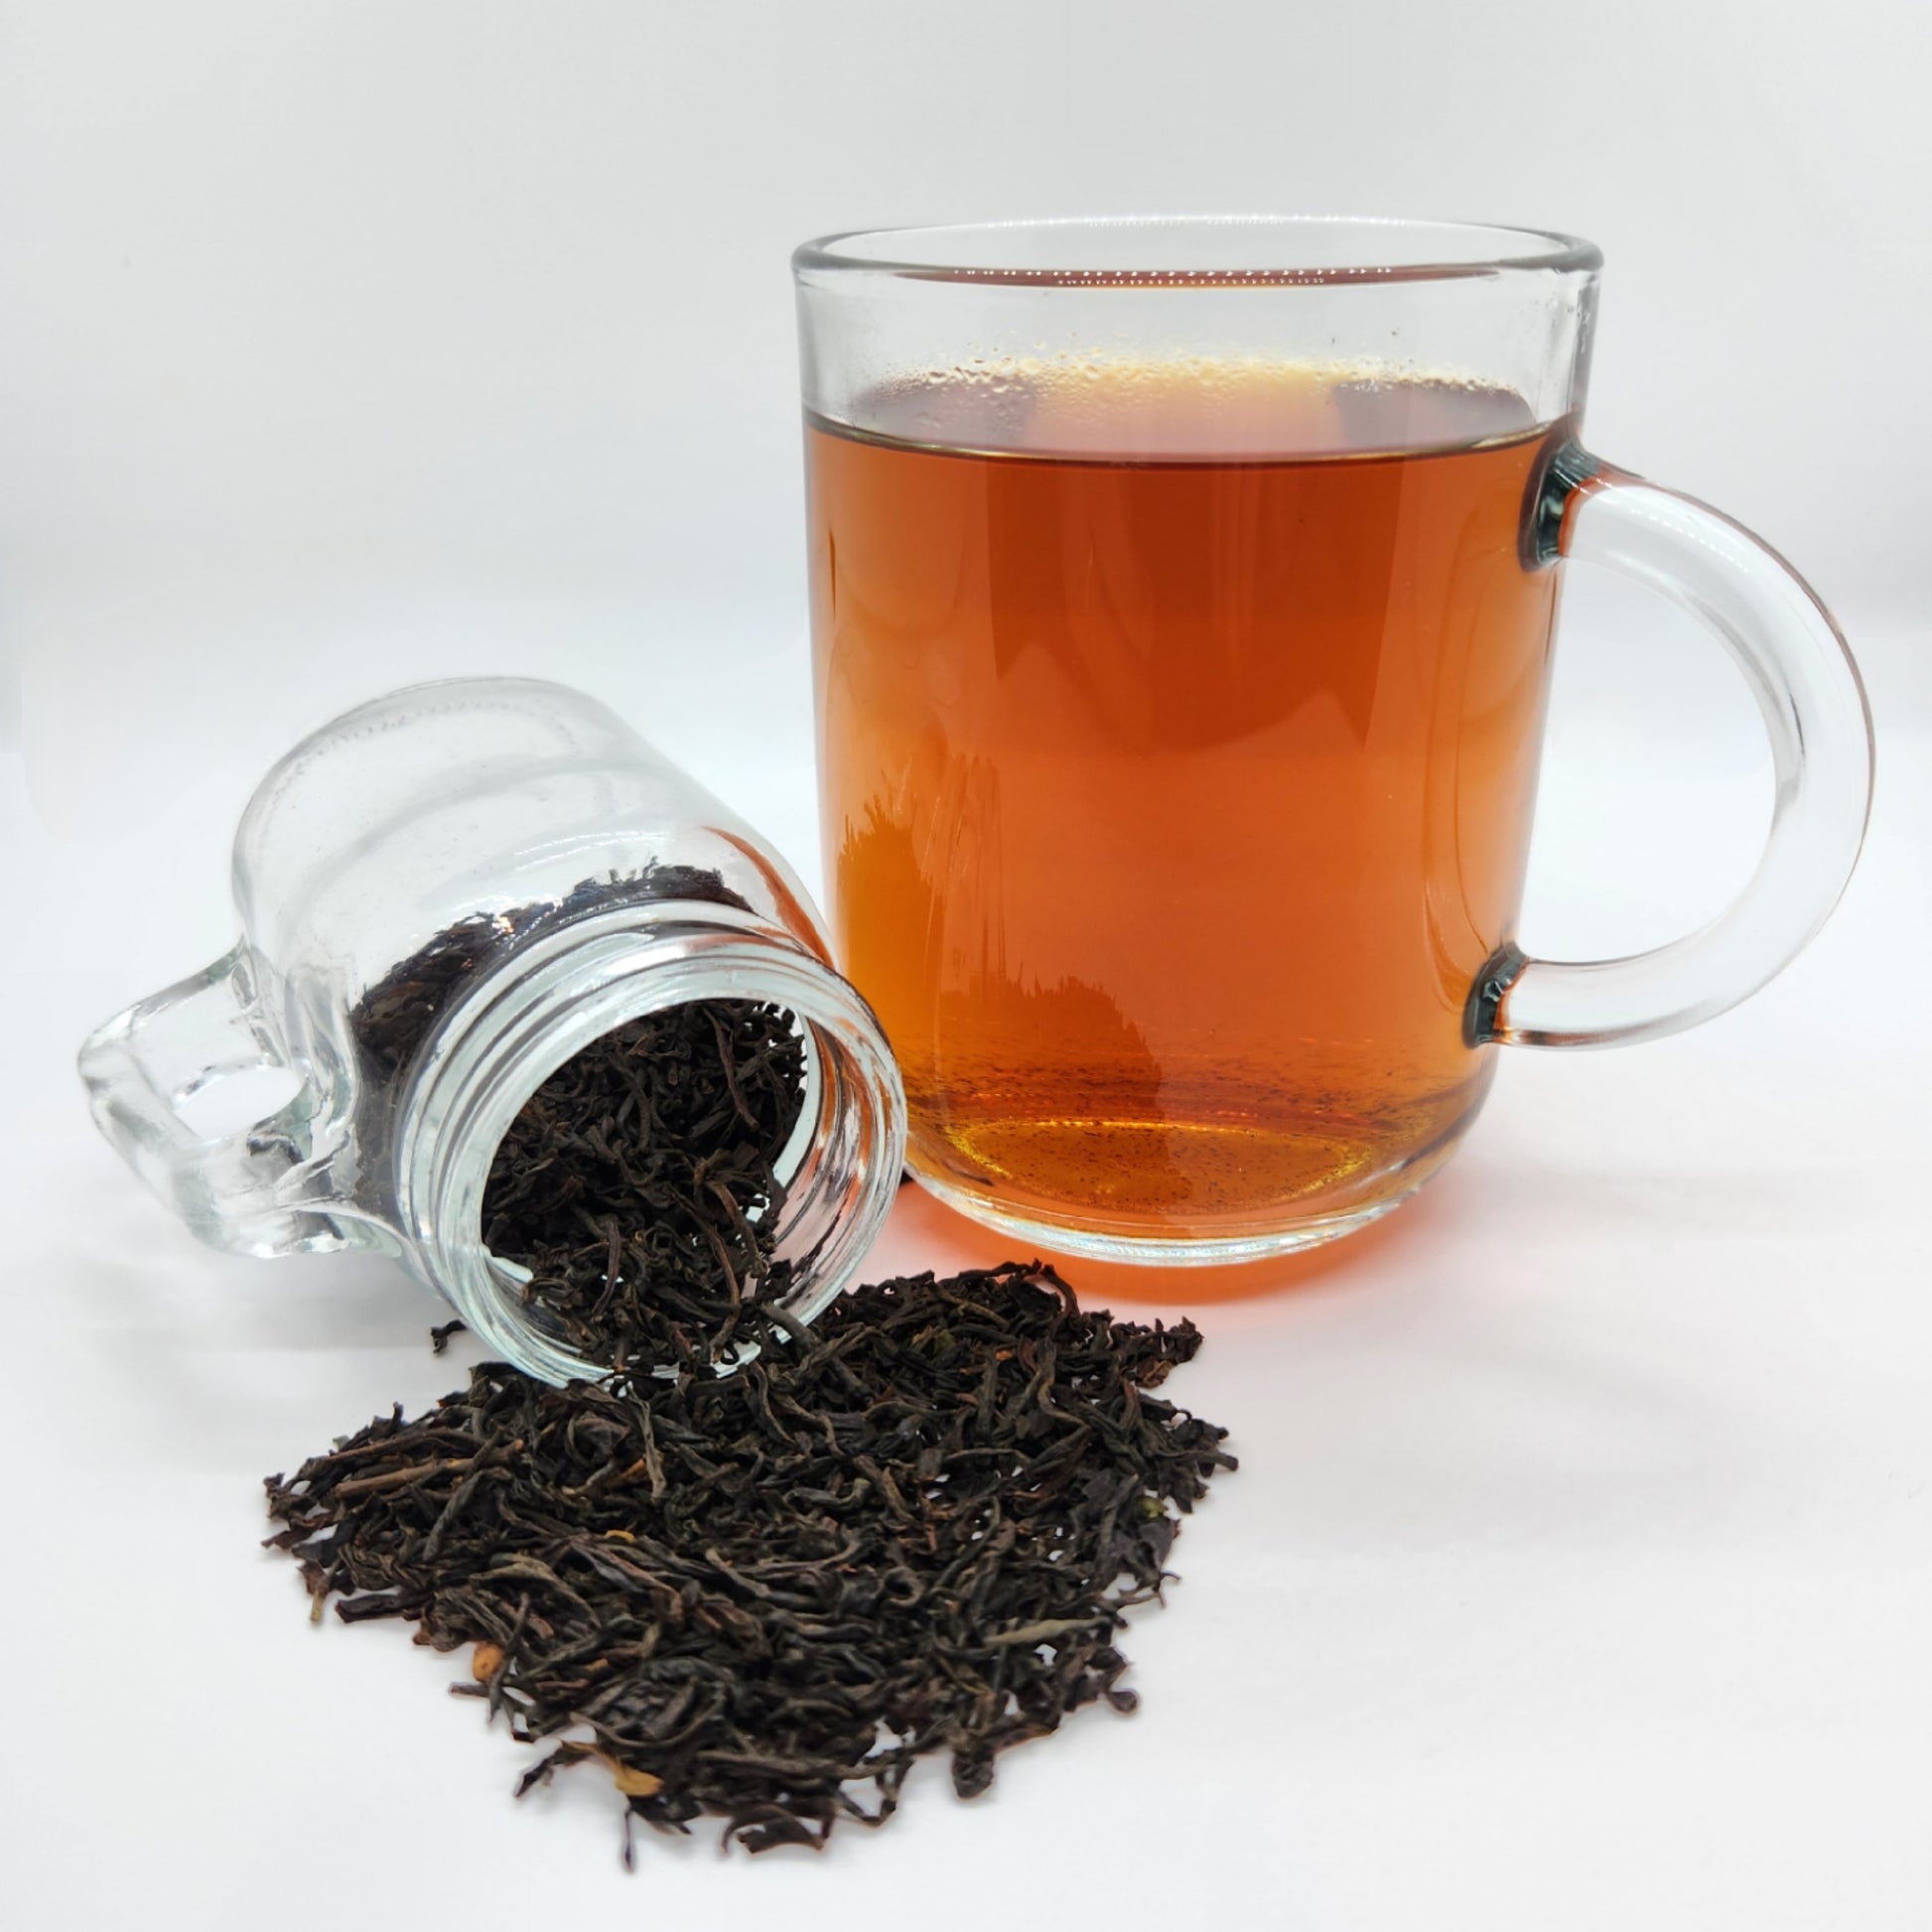 Berty's Brews - Loose leaf earl grey tea